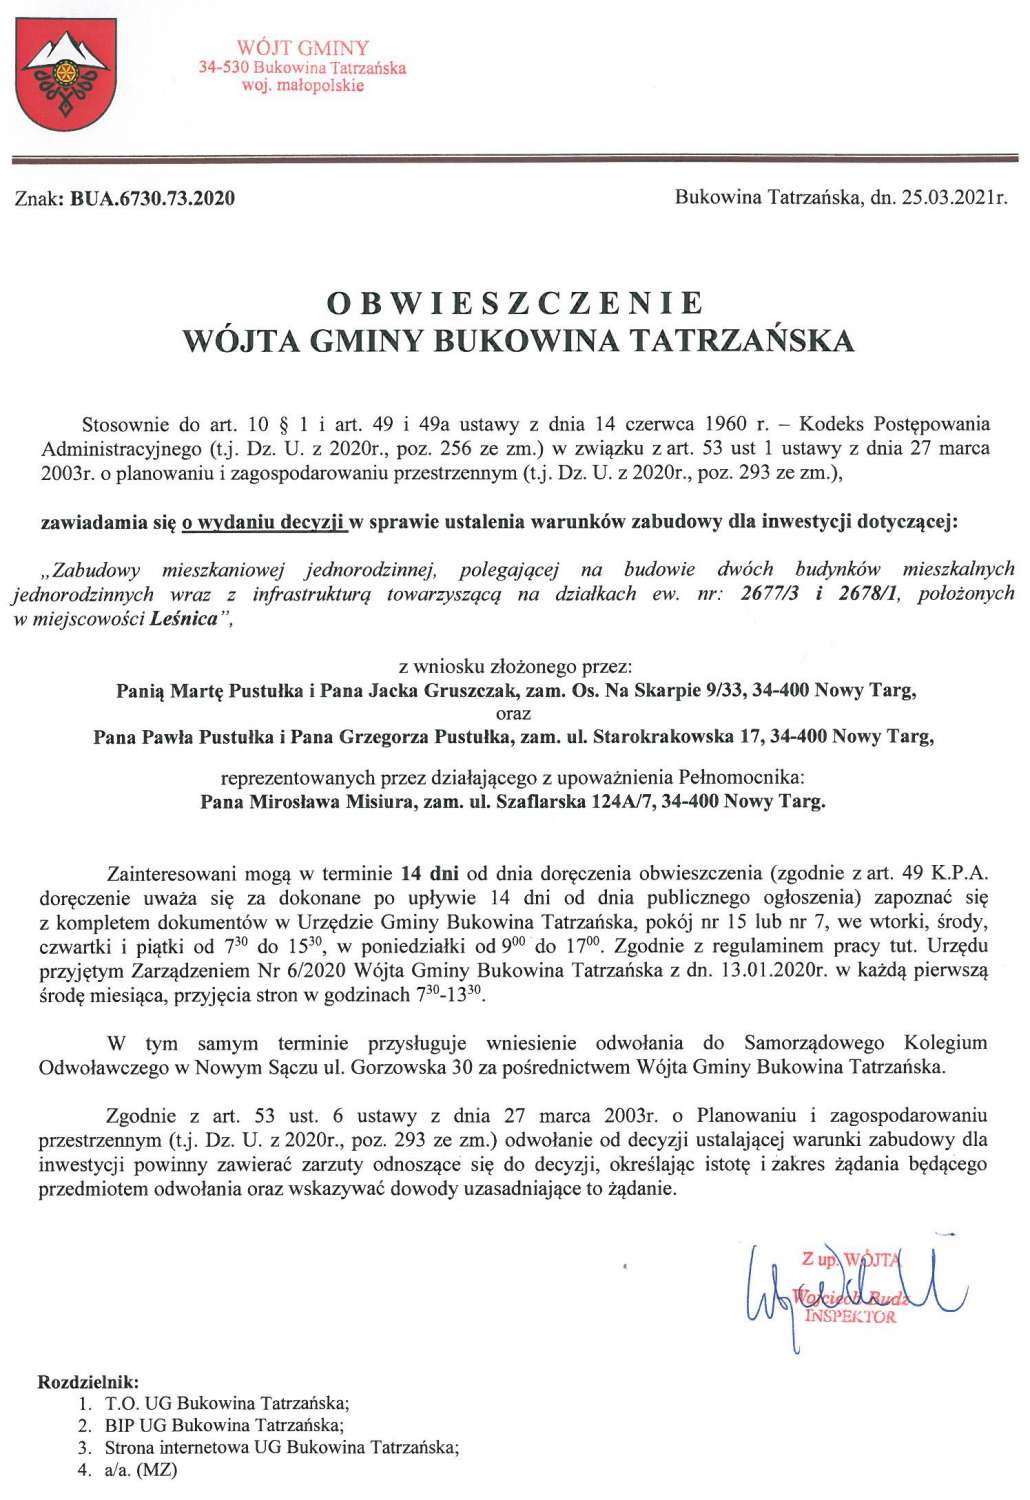 Obwieszczenie Wójta Gminy Bukowina Tatrzańska BUA 6730.73.2020